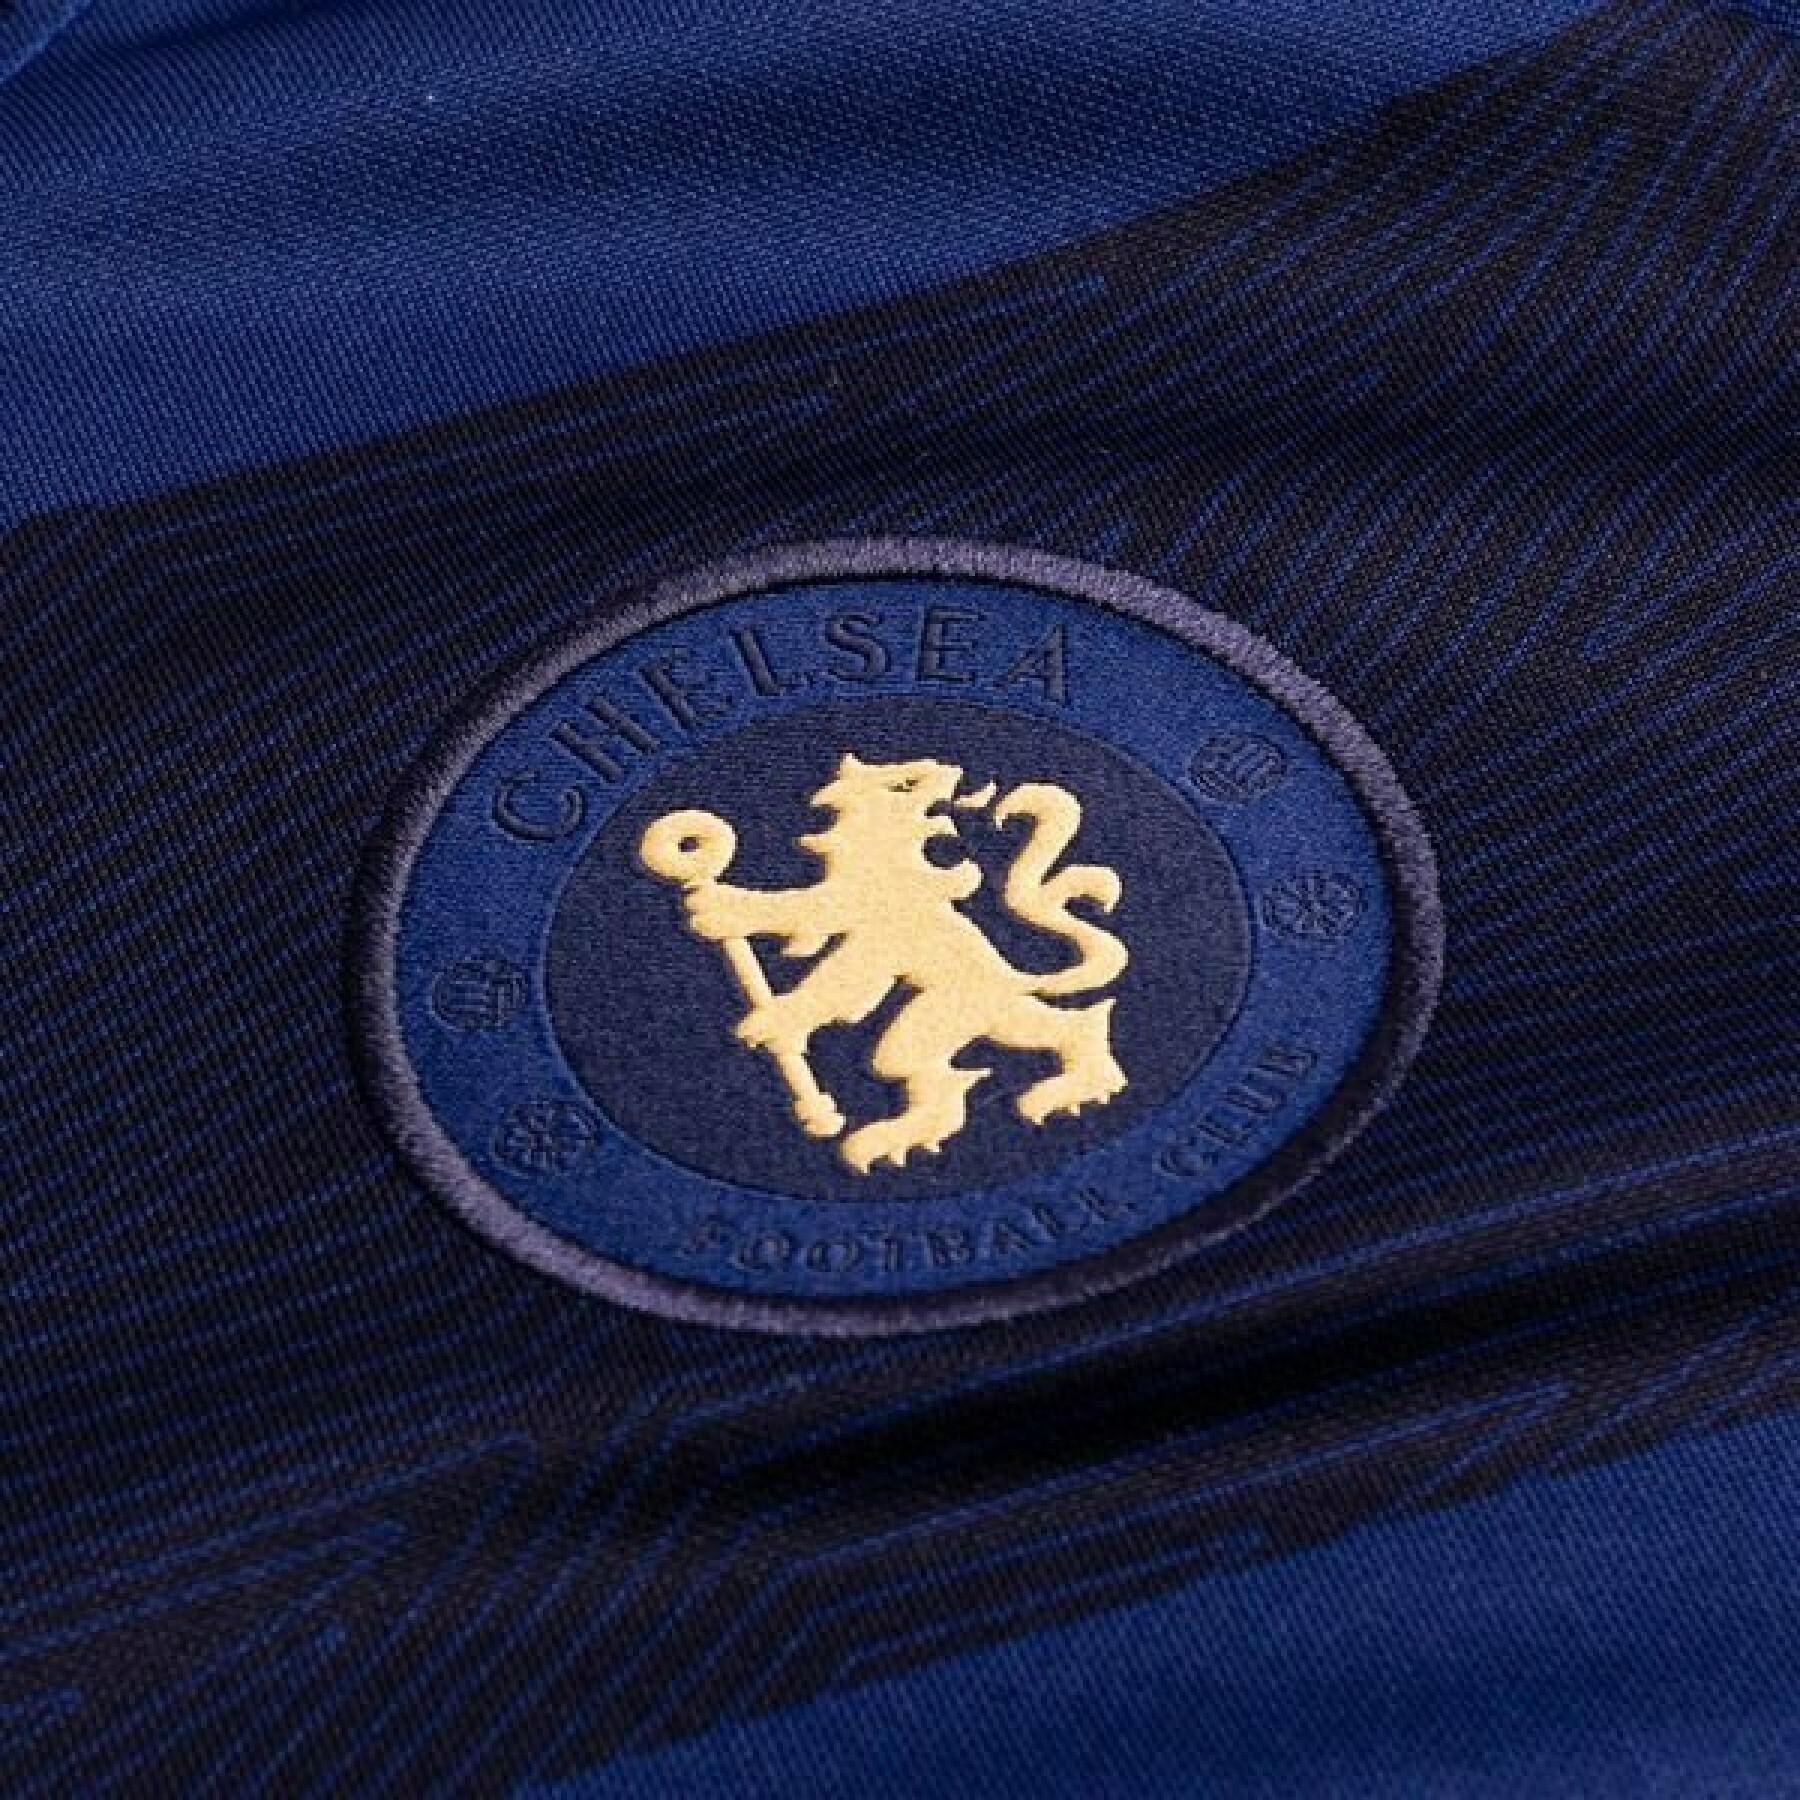 Camiseta feminina Chelsea 2021/22 Dri-FIT